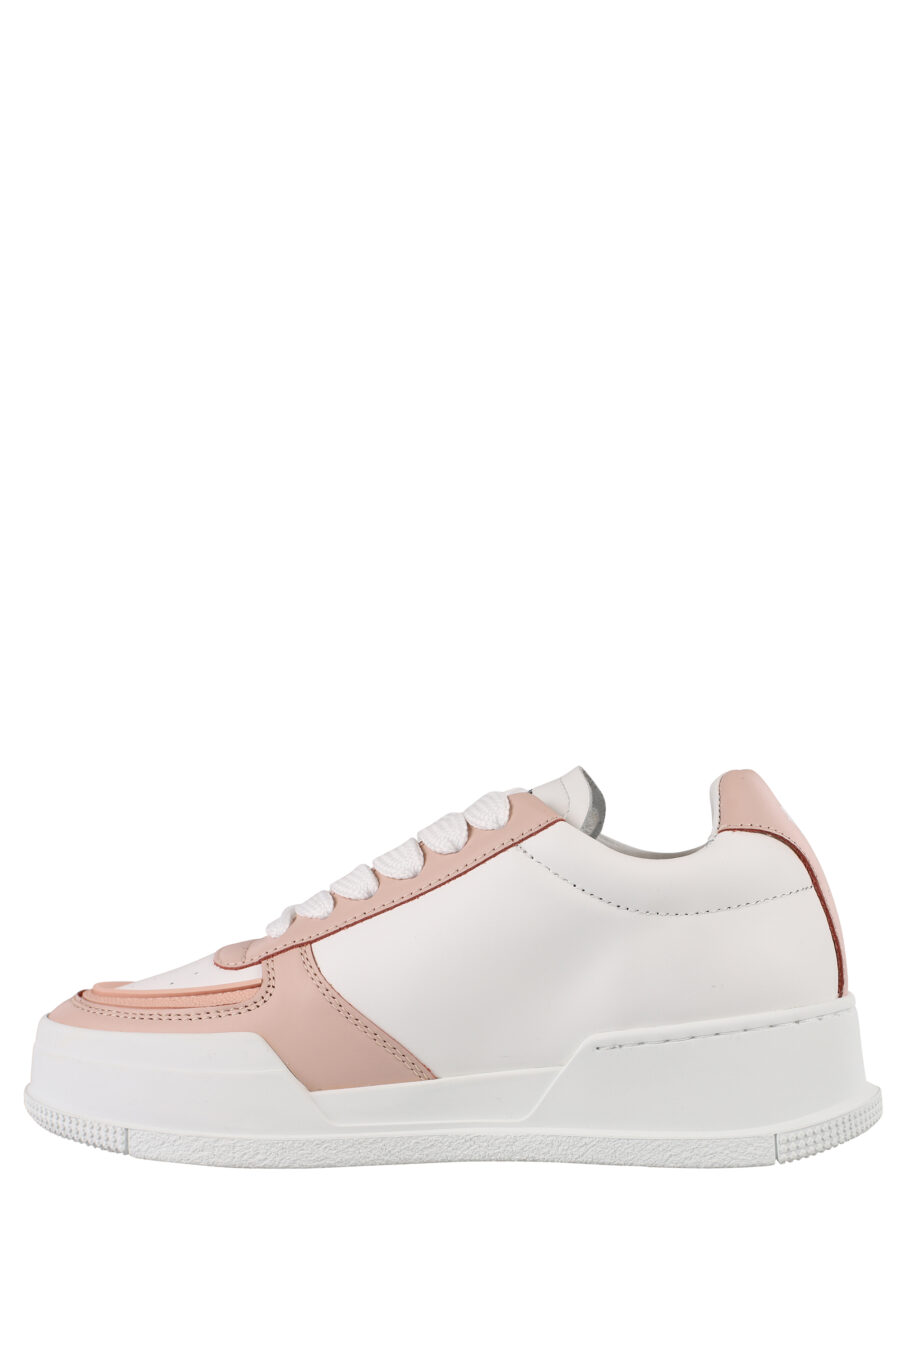 Zapatillas blancas de plataforma con detalle rosa - IMG 1177